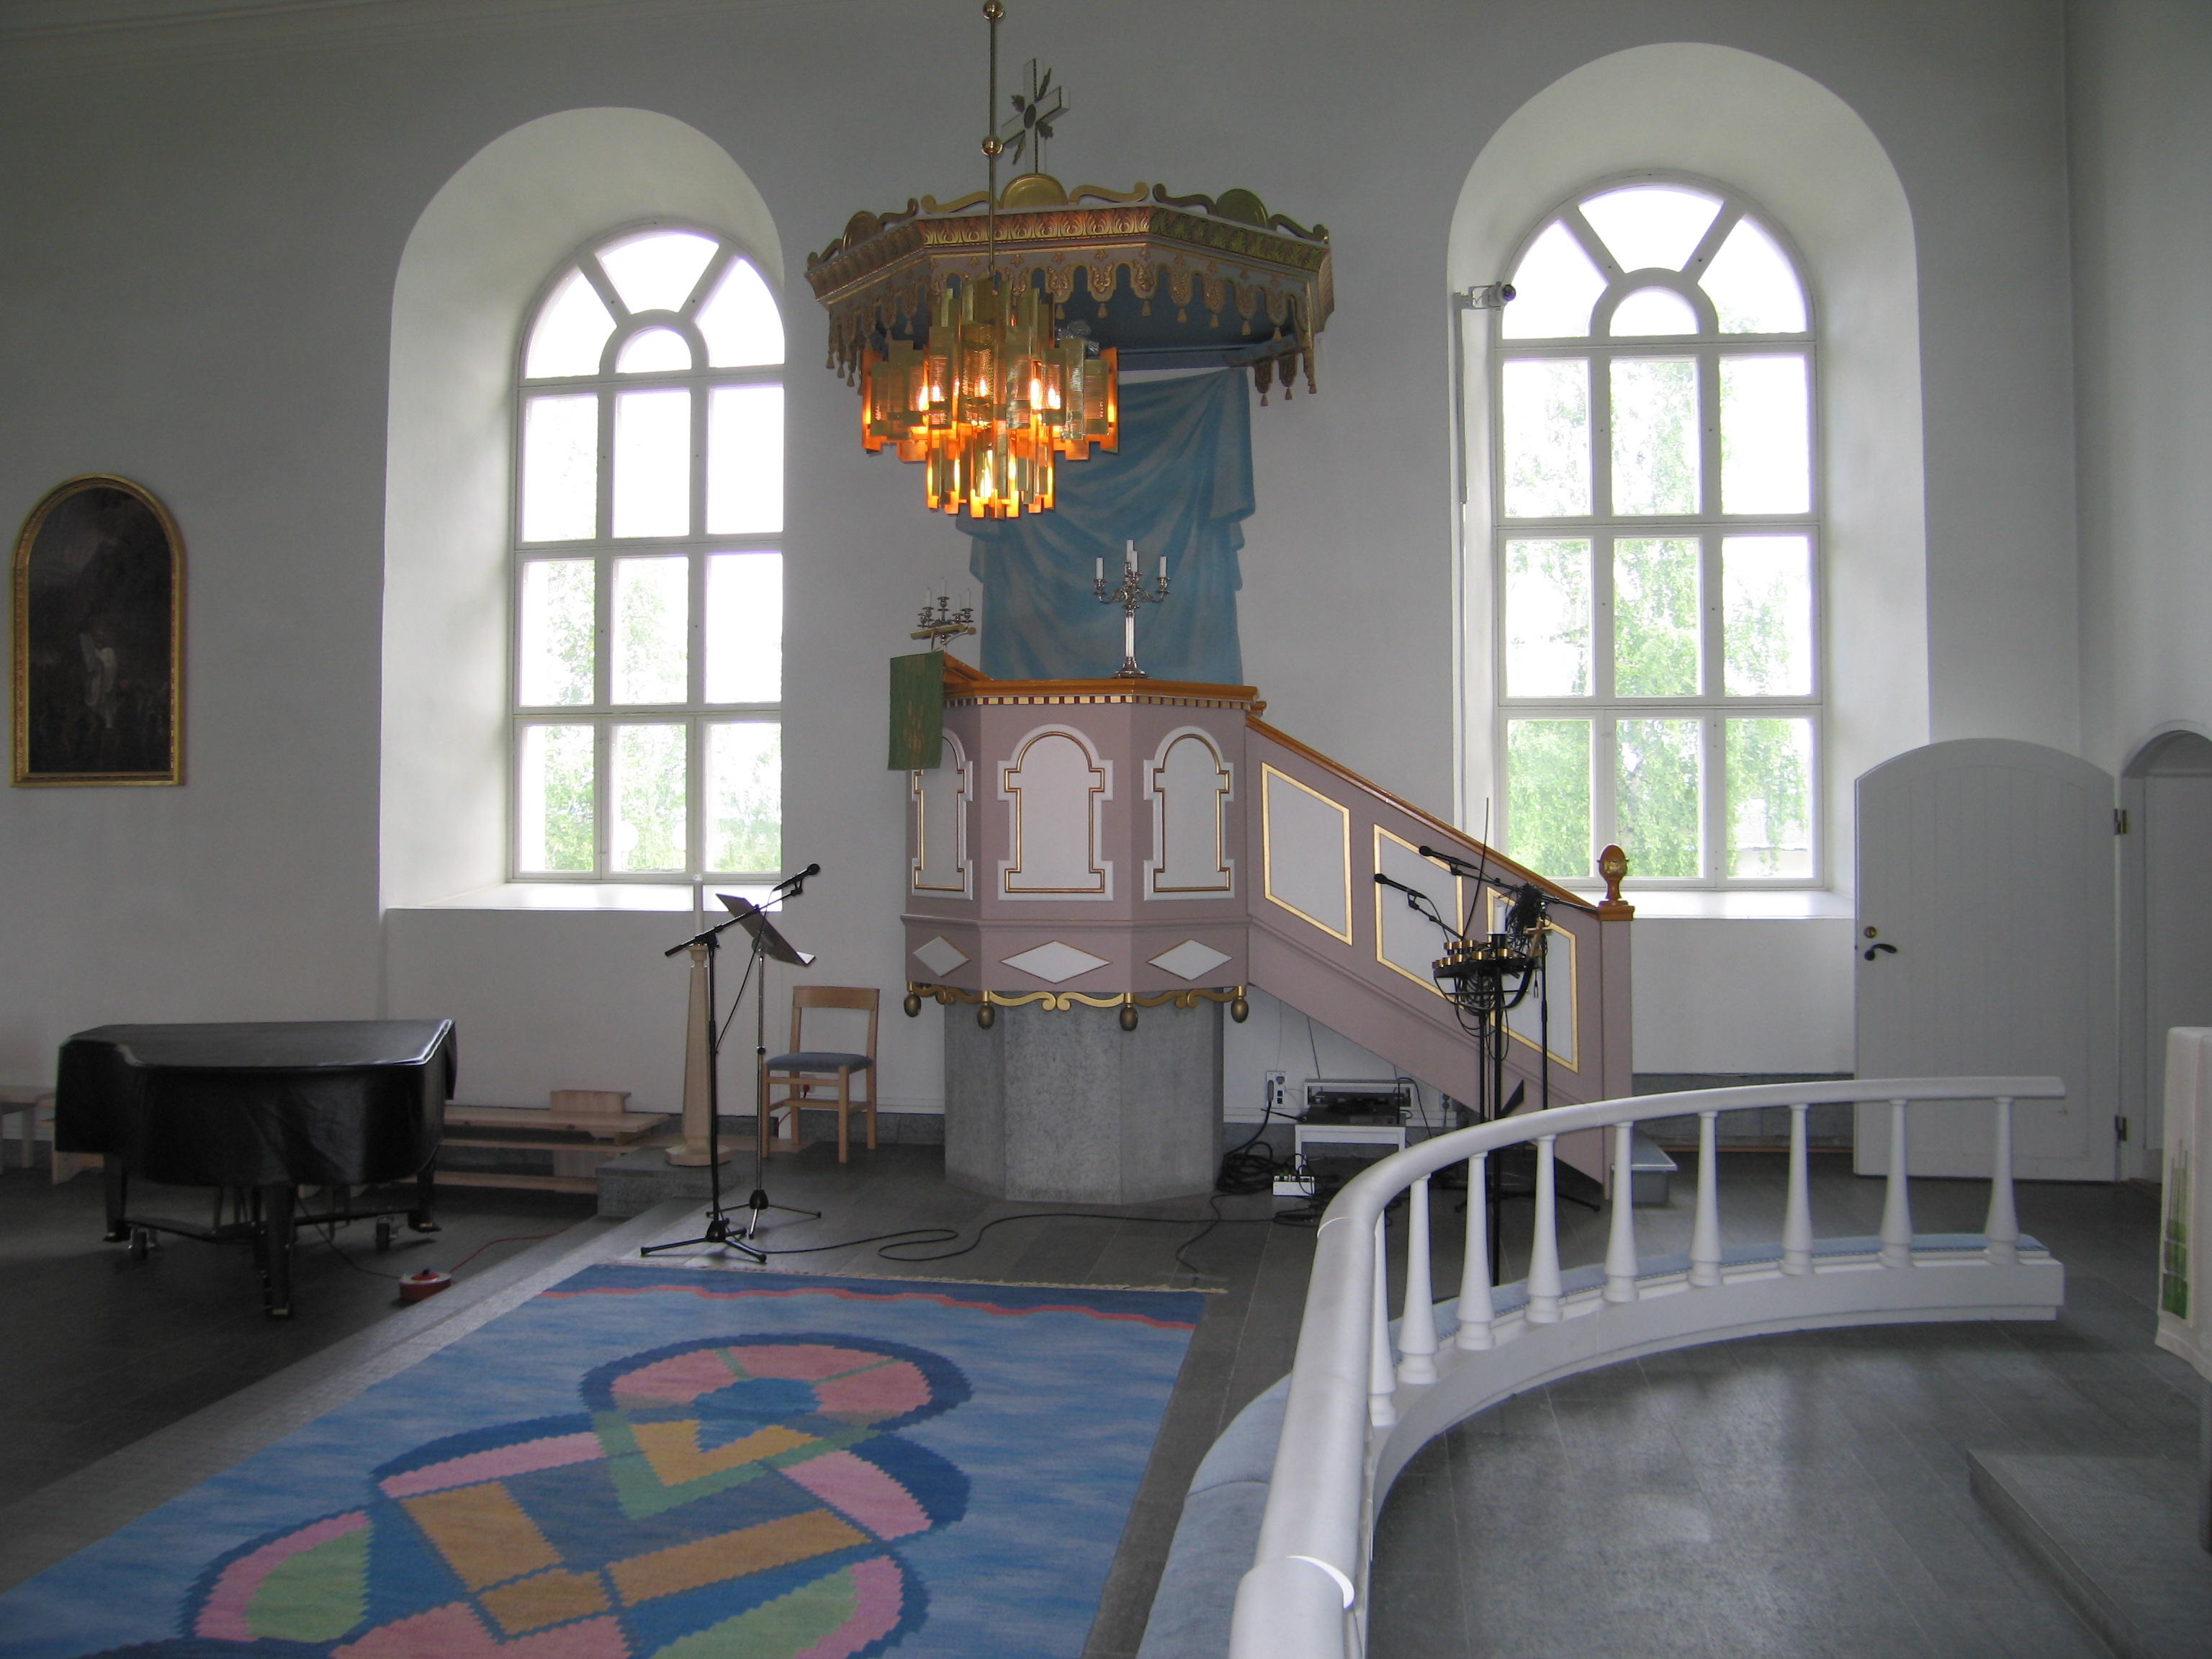 Sköns kyrka, interiör, kyrkorummet, predikstolen. 